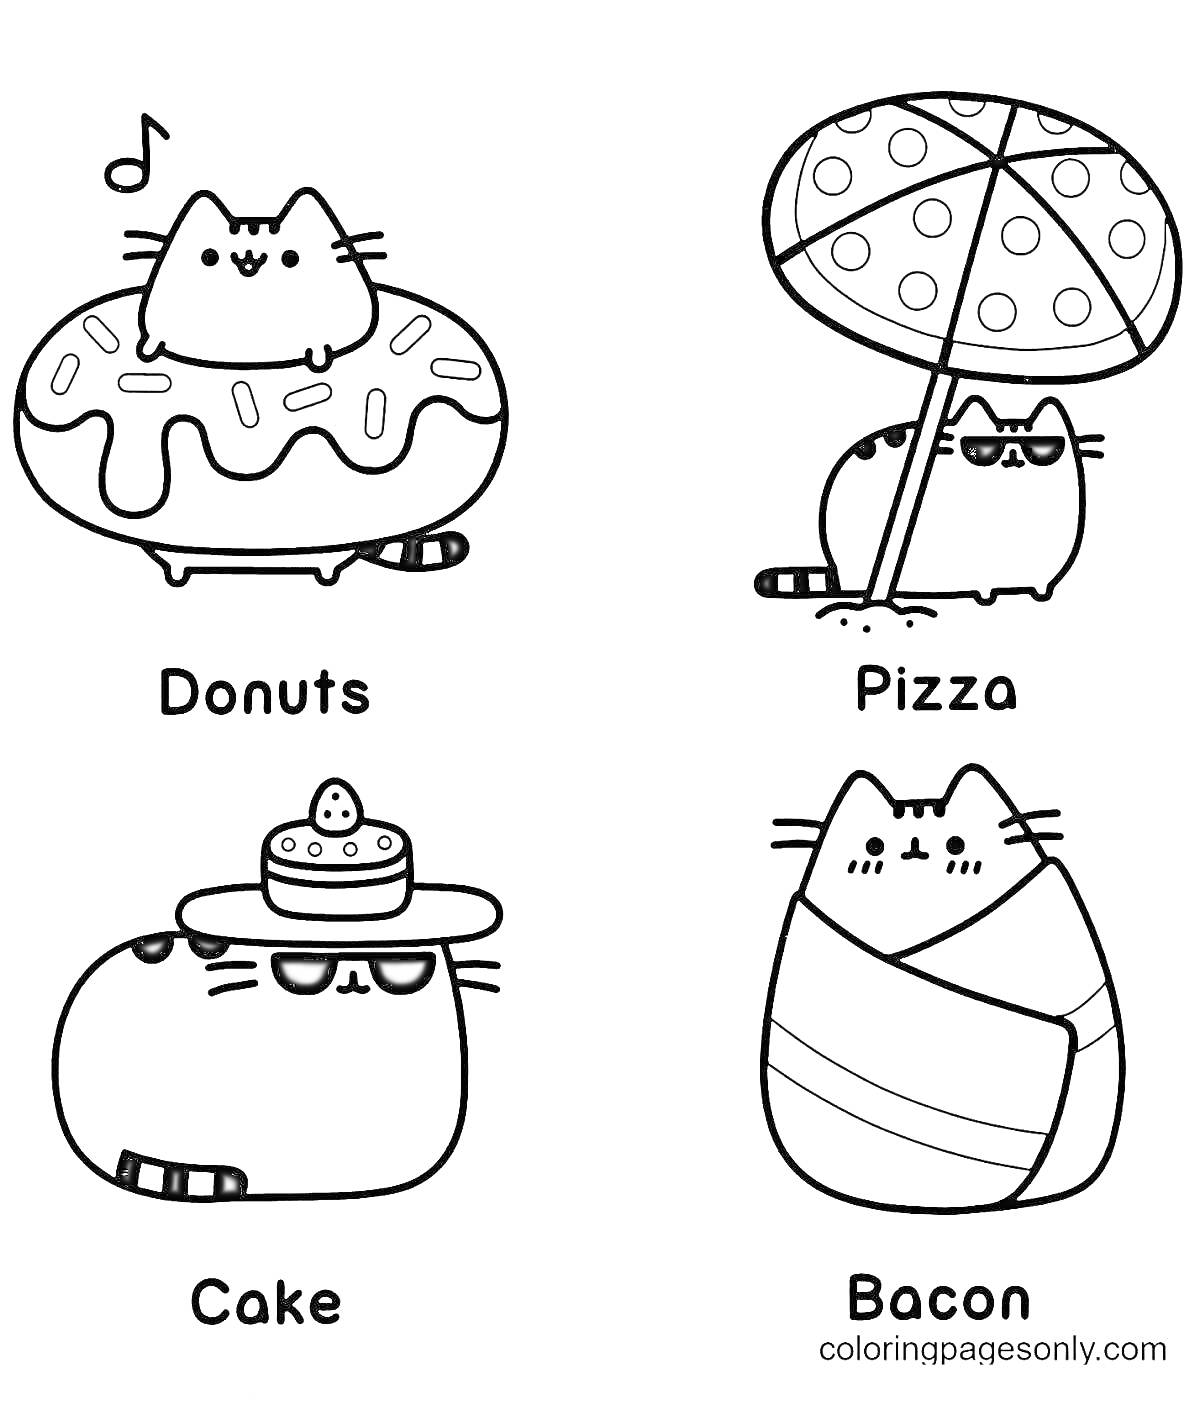 кот Пушин с пончиком, кот Пушин с пиццей под зонтом, кот Пушин с тортиком, кот Пушин в беконе